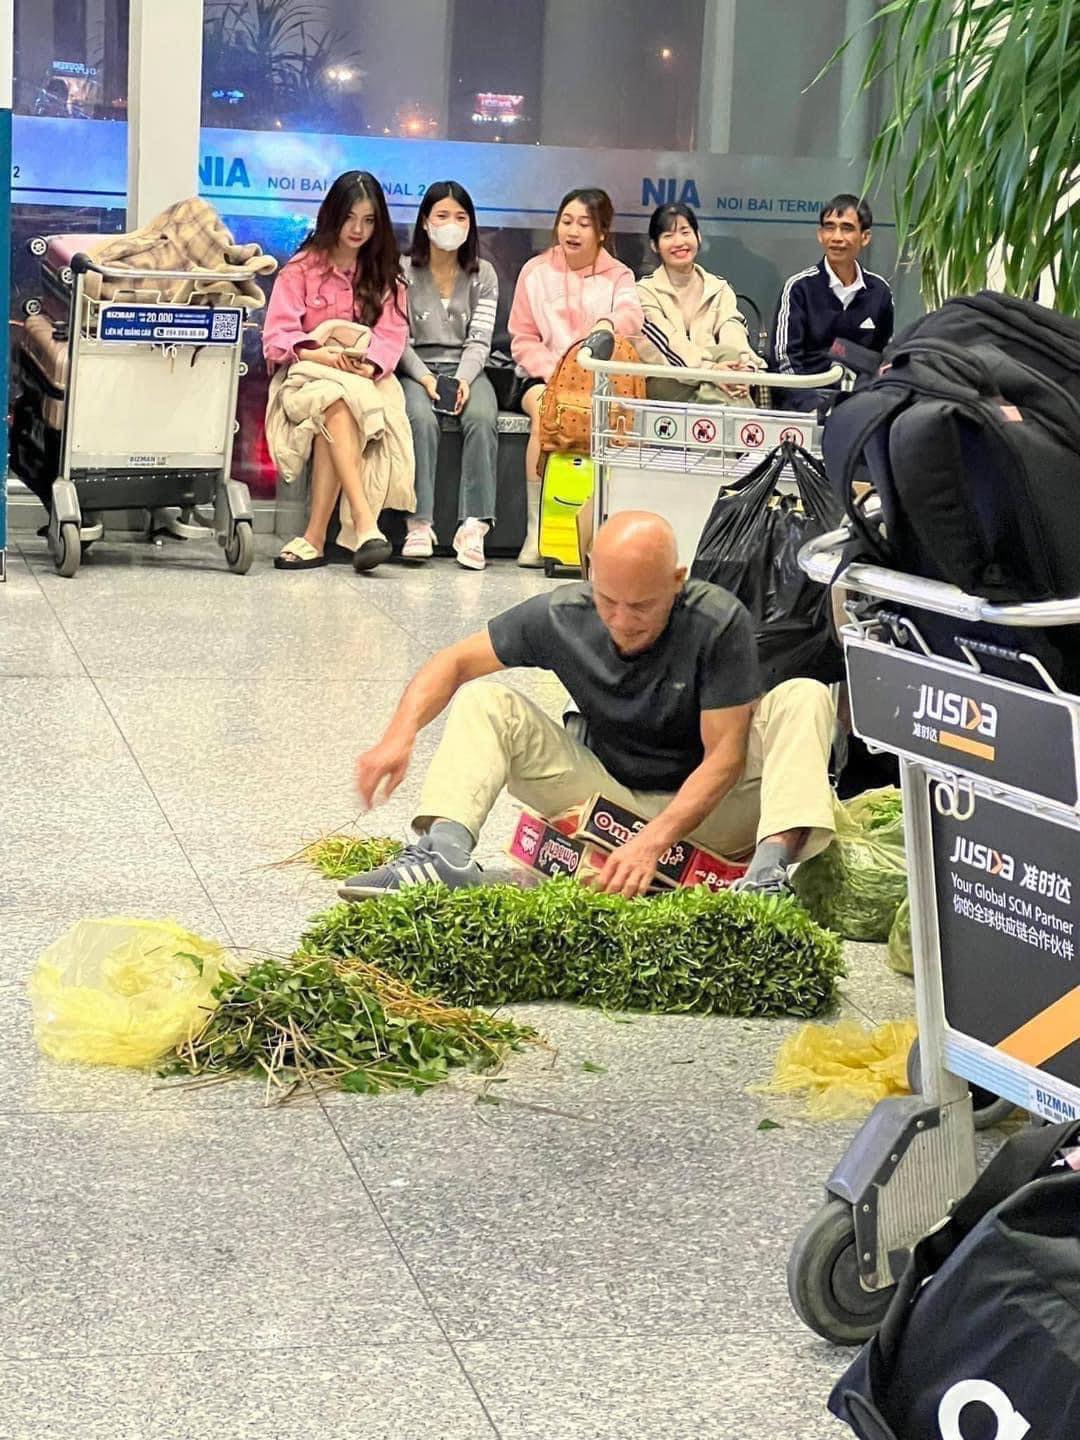 Xuất hiện hình ảnh người đàn ông ngồi nhặt rau muống ngay giữa sân bay, 'quà' Việt được du khách mê mẩn? - ảnh 1